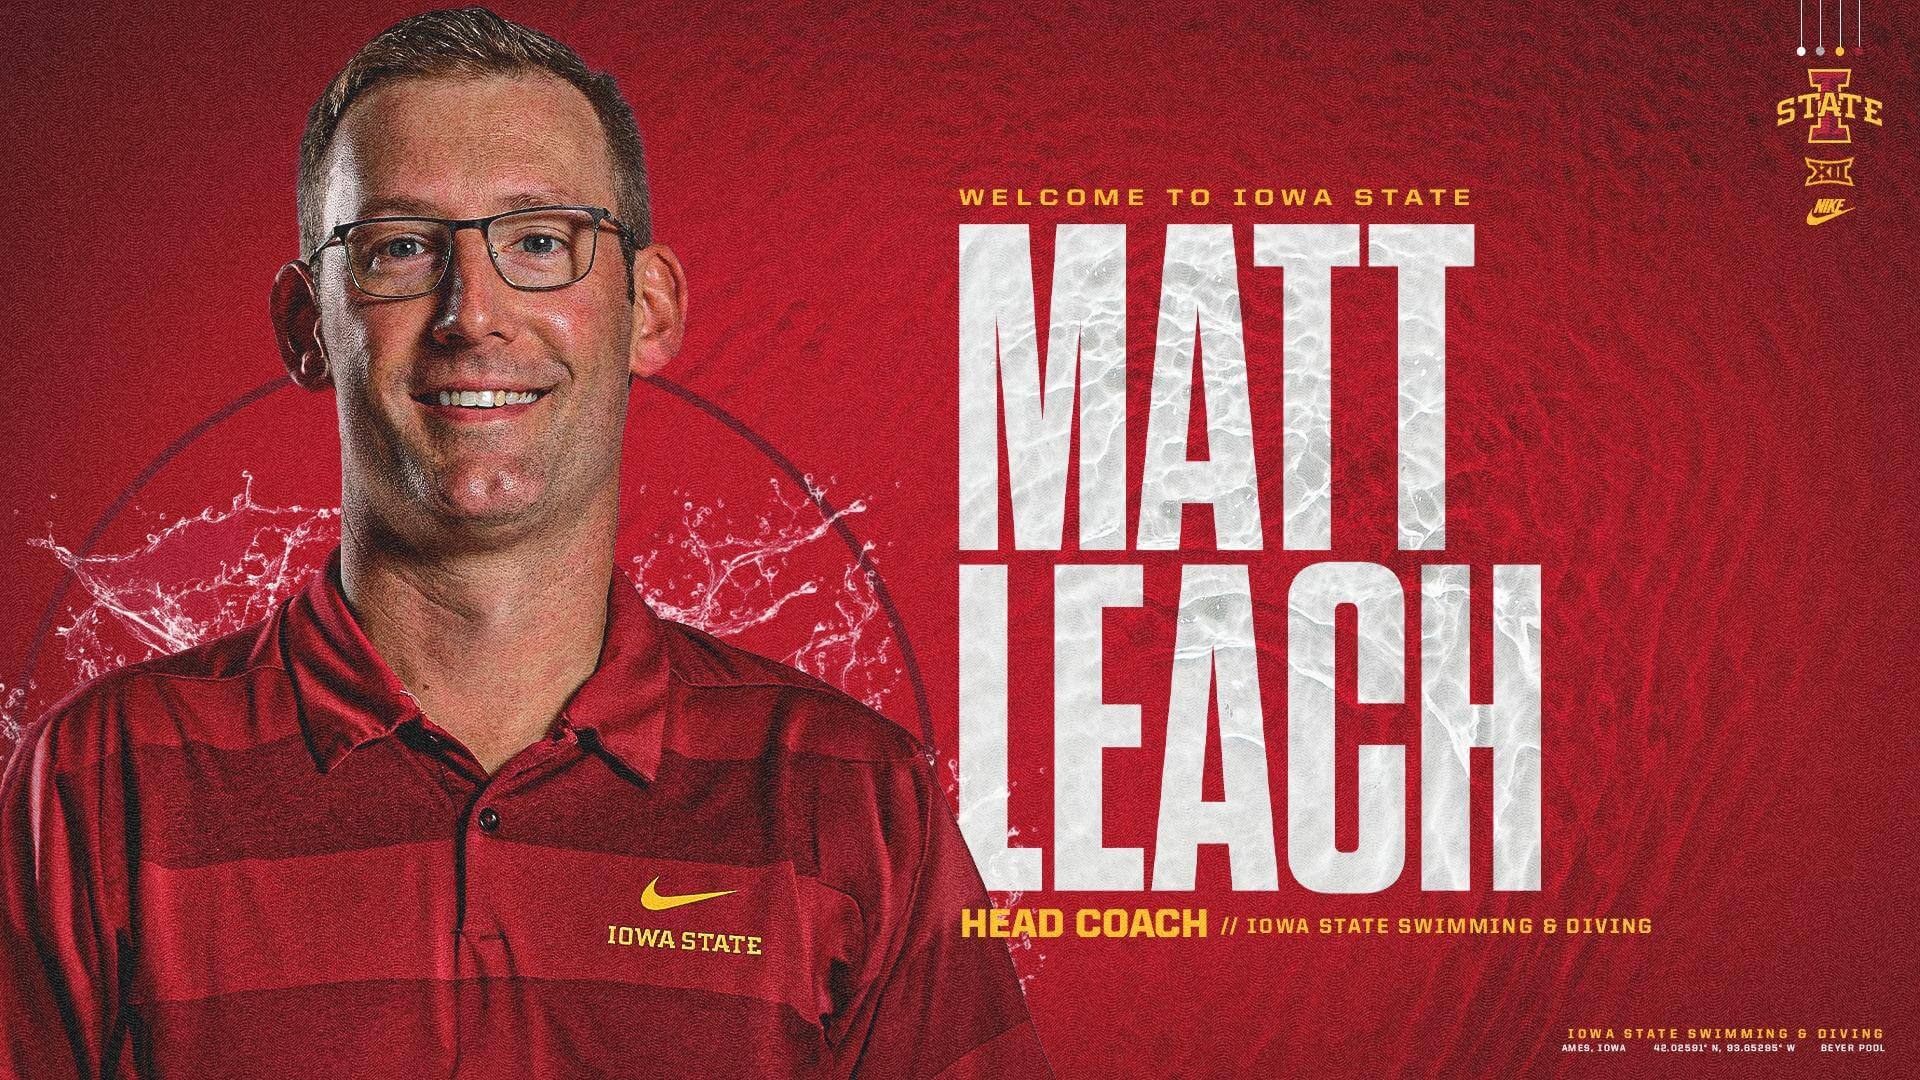 Iowa State Hires Matt Leach Away from Washington State as Head Coach